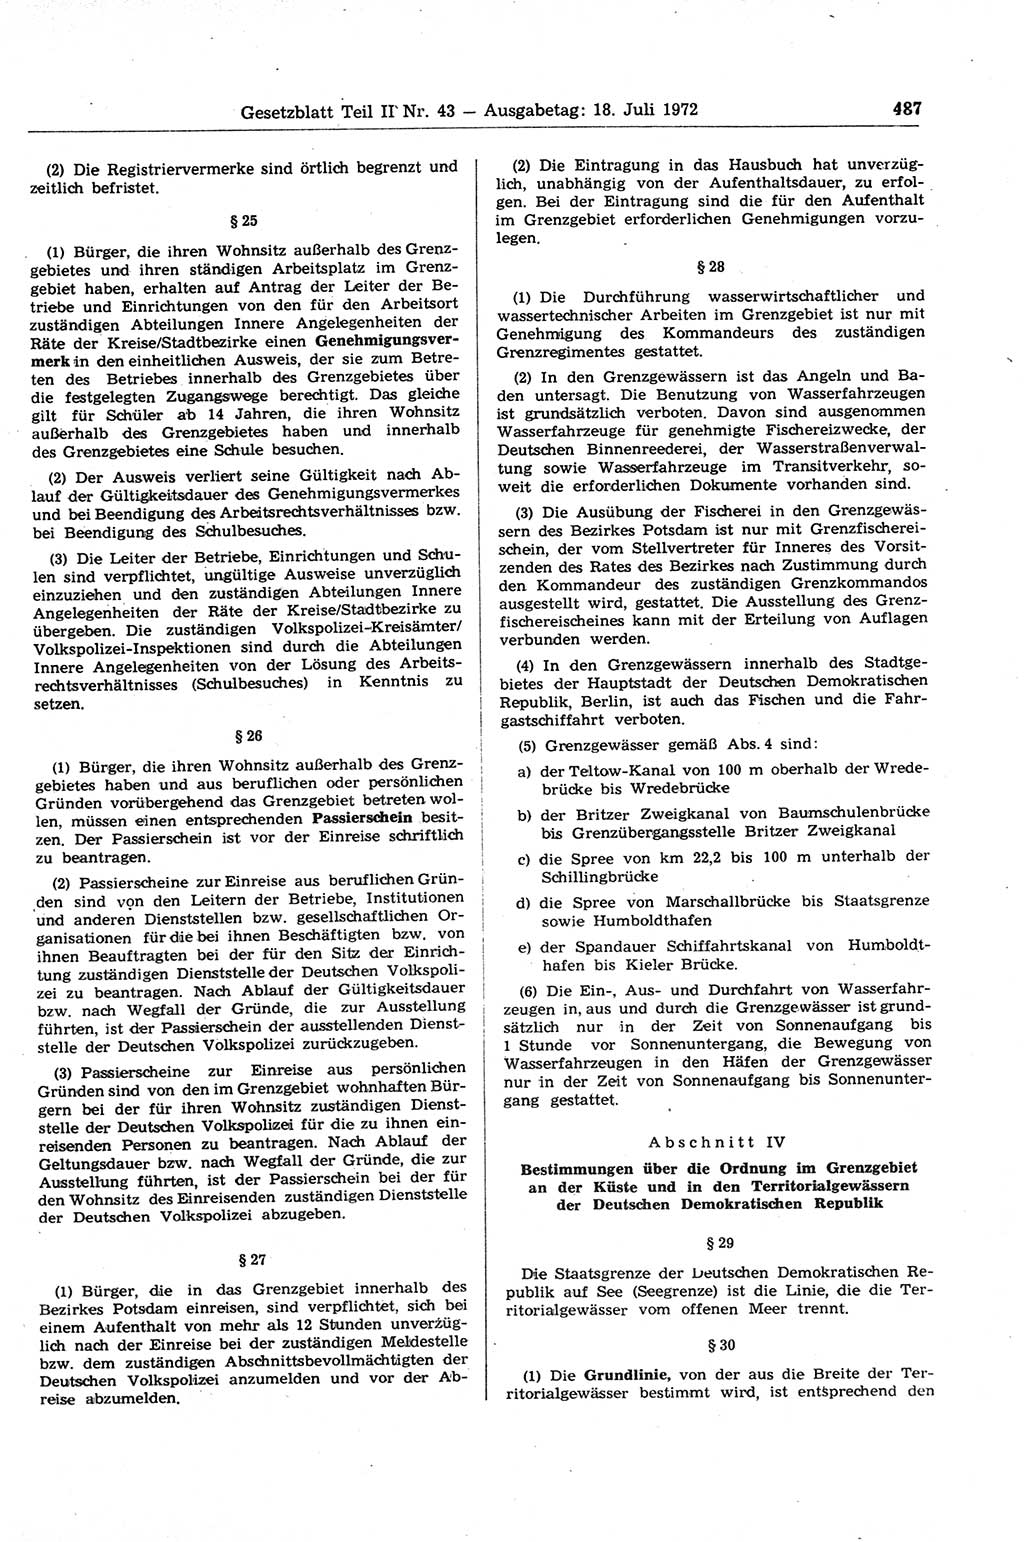 Gesetzblatt (GBl.) der Deutschen Demokratischen Republik (DDR) Teil ⅠⅠ 1972, Seite 487 (GBl. DDR ⅠⅠ 1972, S. 487)